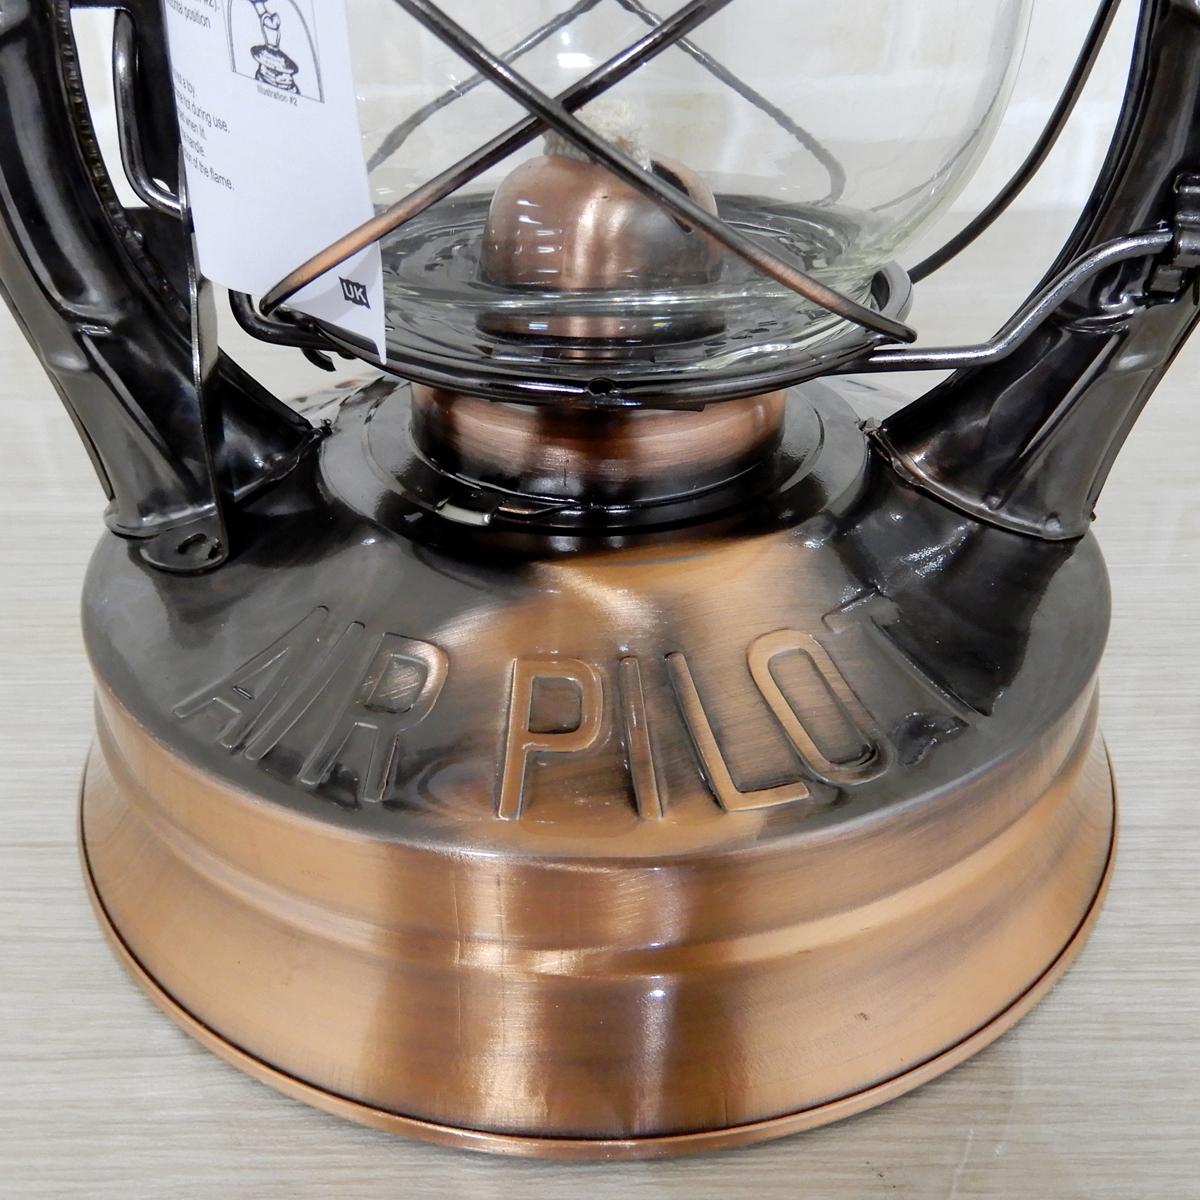 替芯2本付【送料無料】新品 Dietz #8 Air Pilot Oil Lantern - Bronze 【日本未発売】 ◇デイツ No.8 ブロンズ 青銅 ハリケーンランタン 銅